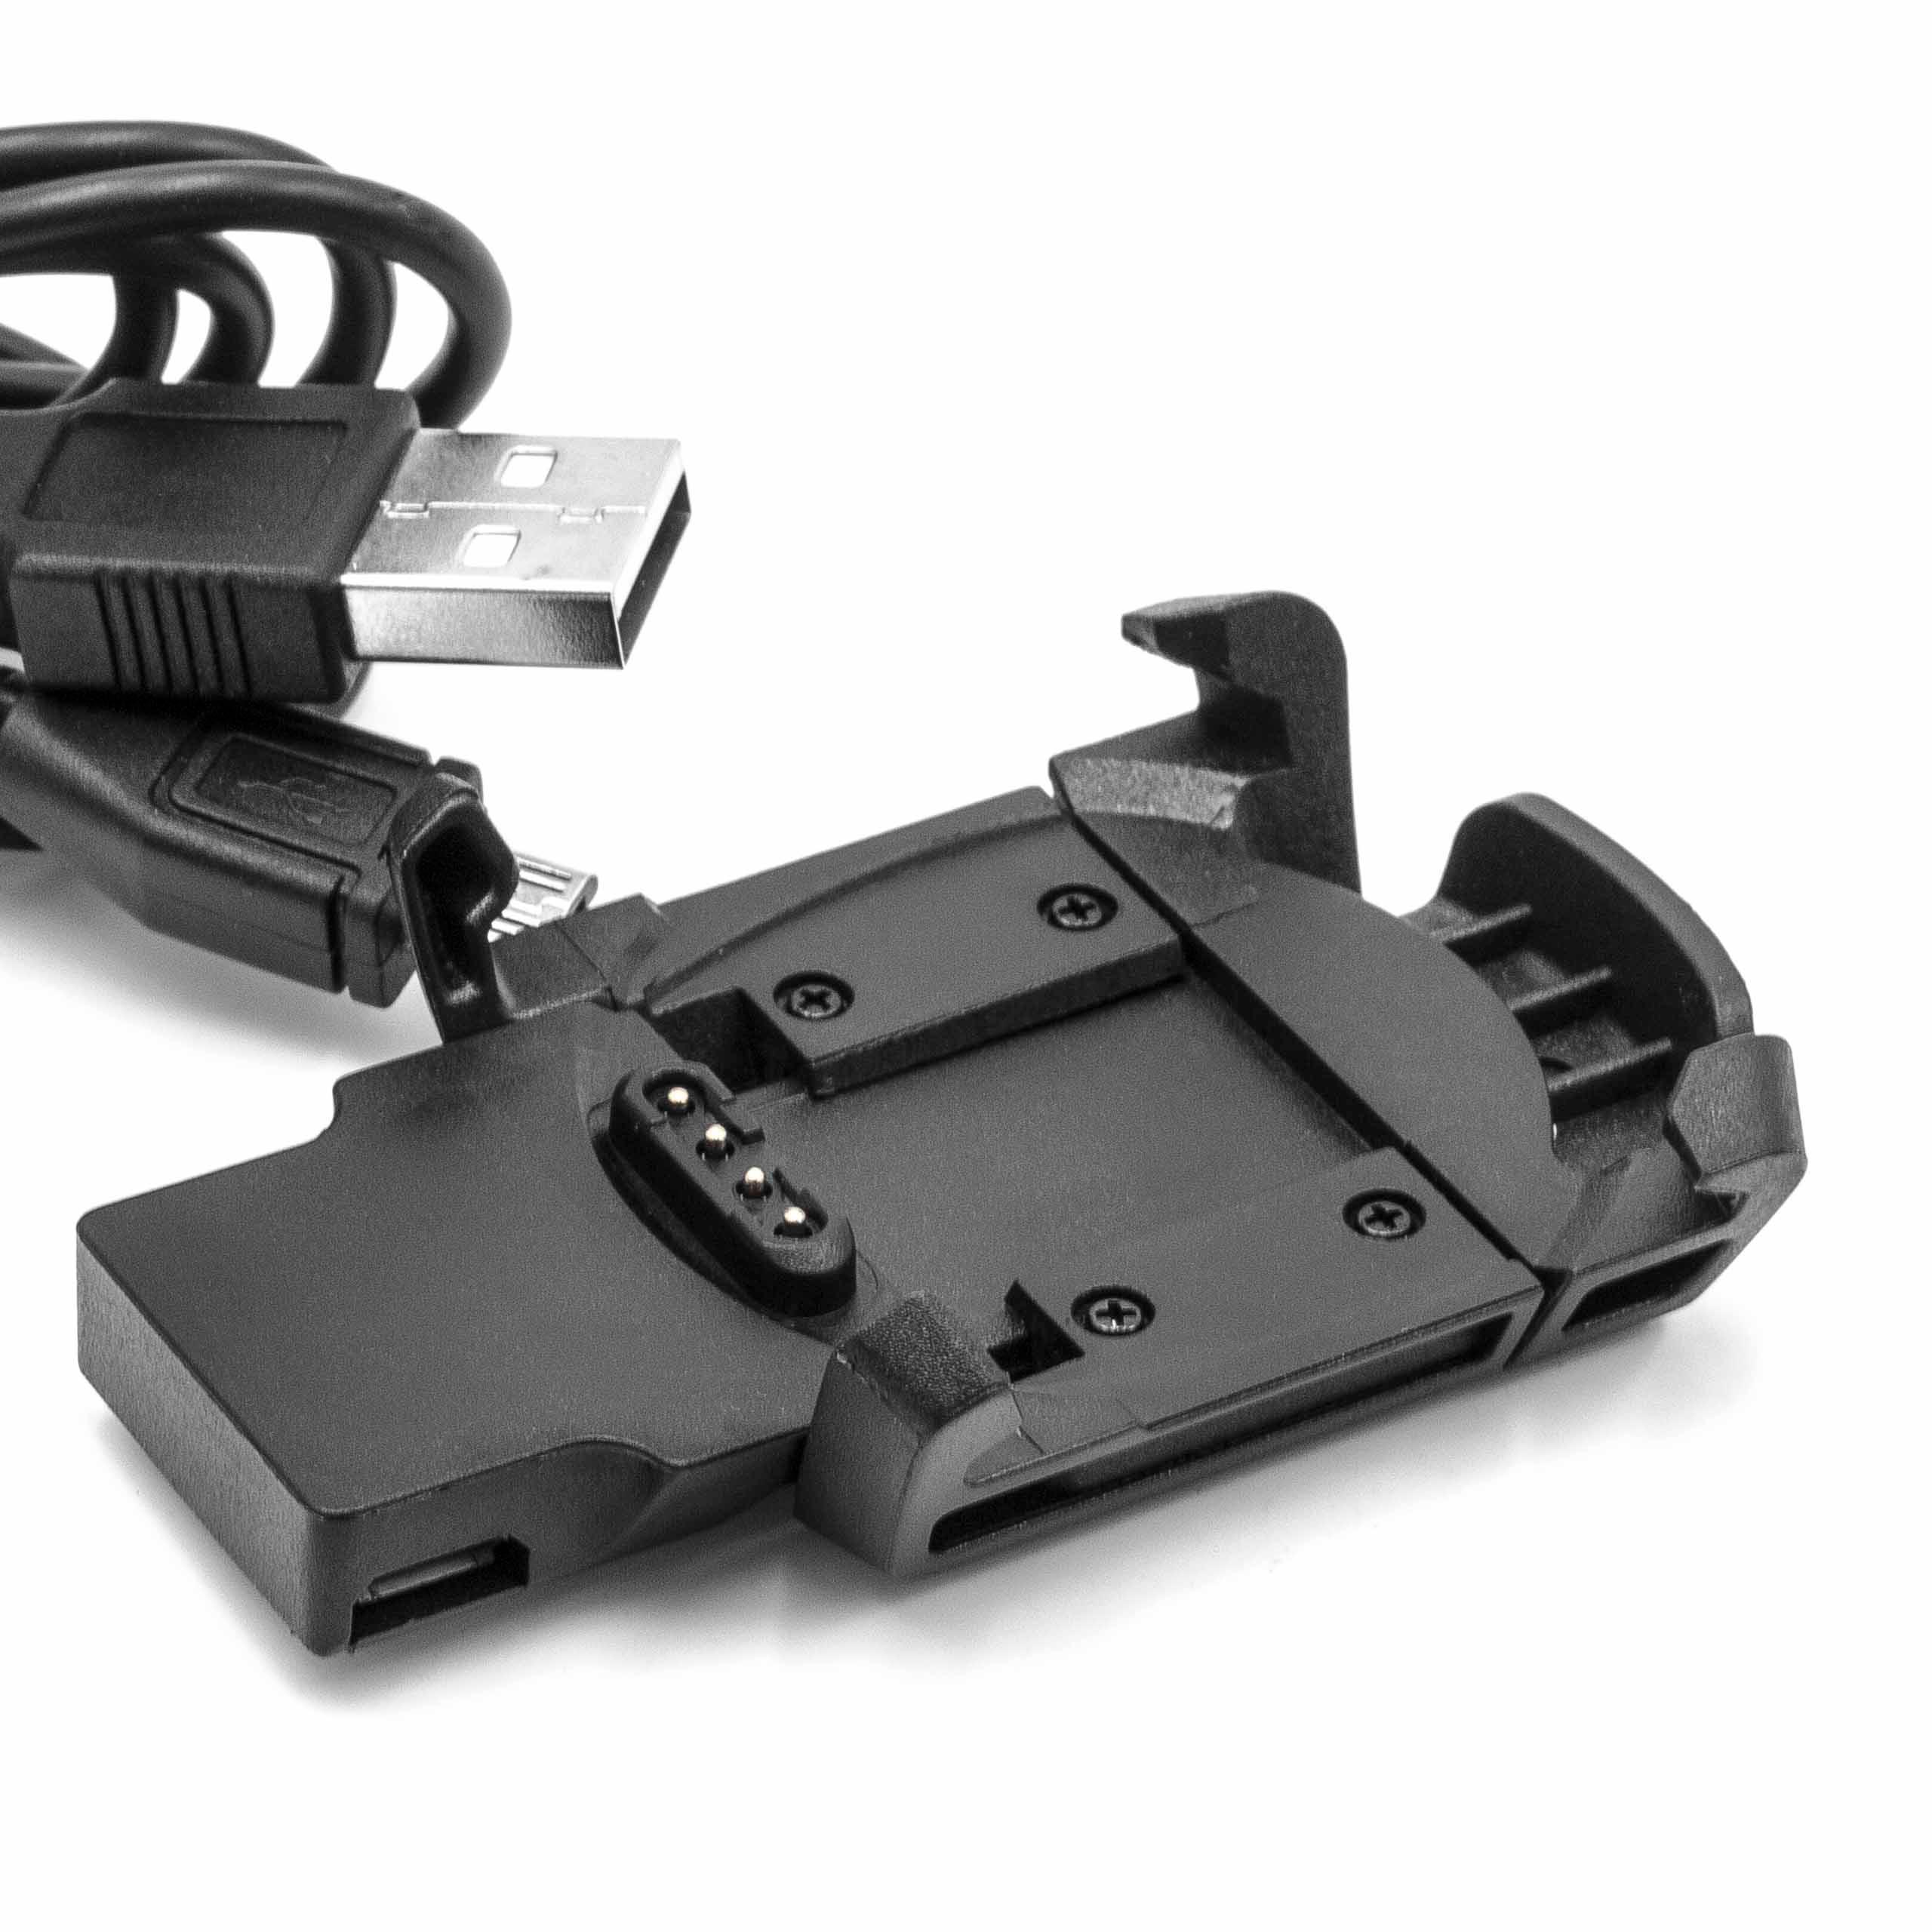 Ladeschale passend für Garmin Descent - 100 cm Kabel, Mit Micro-USB-Kabel